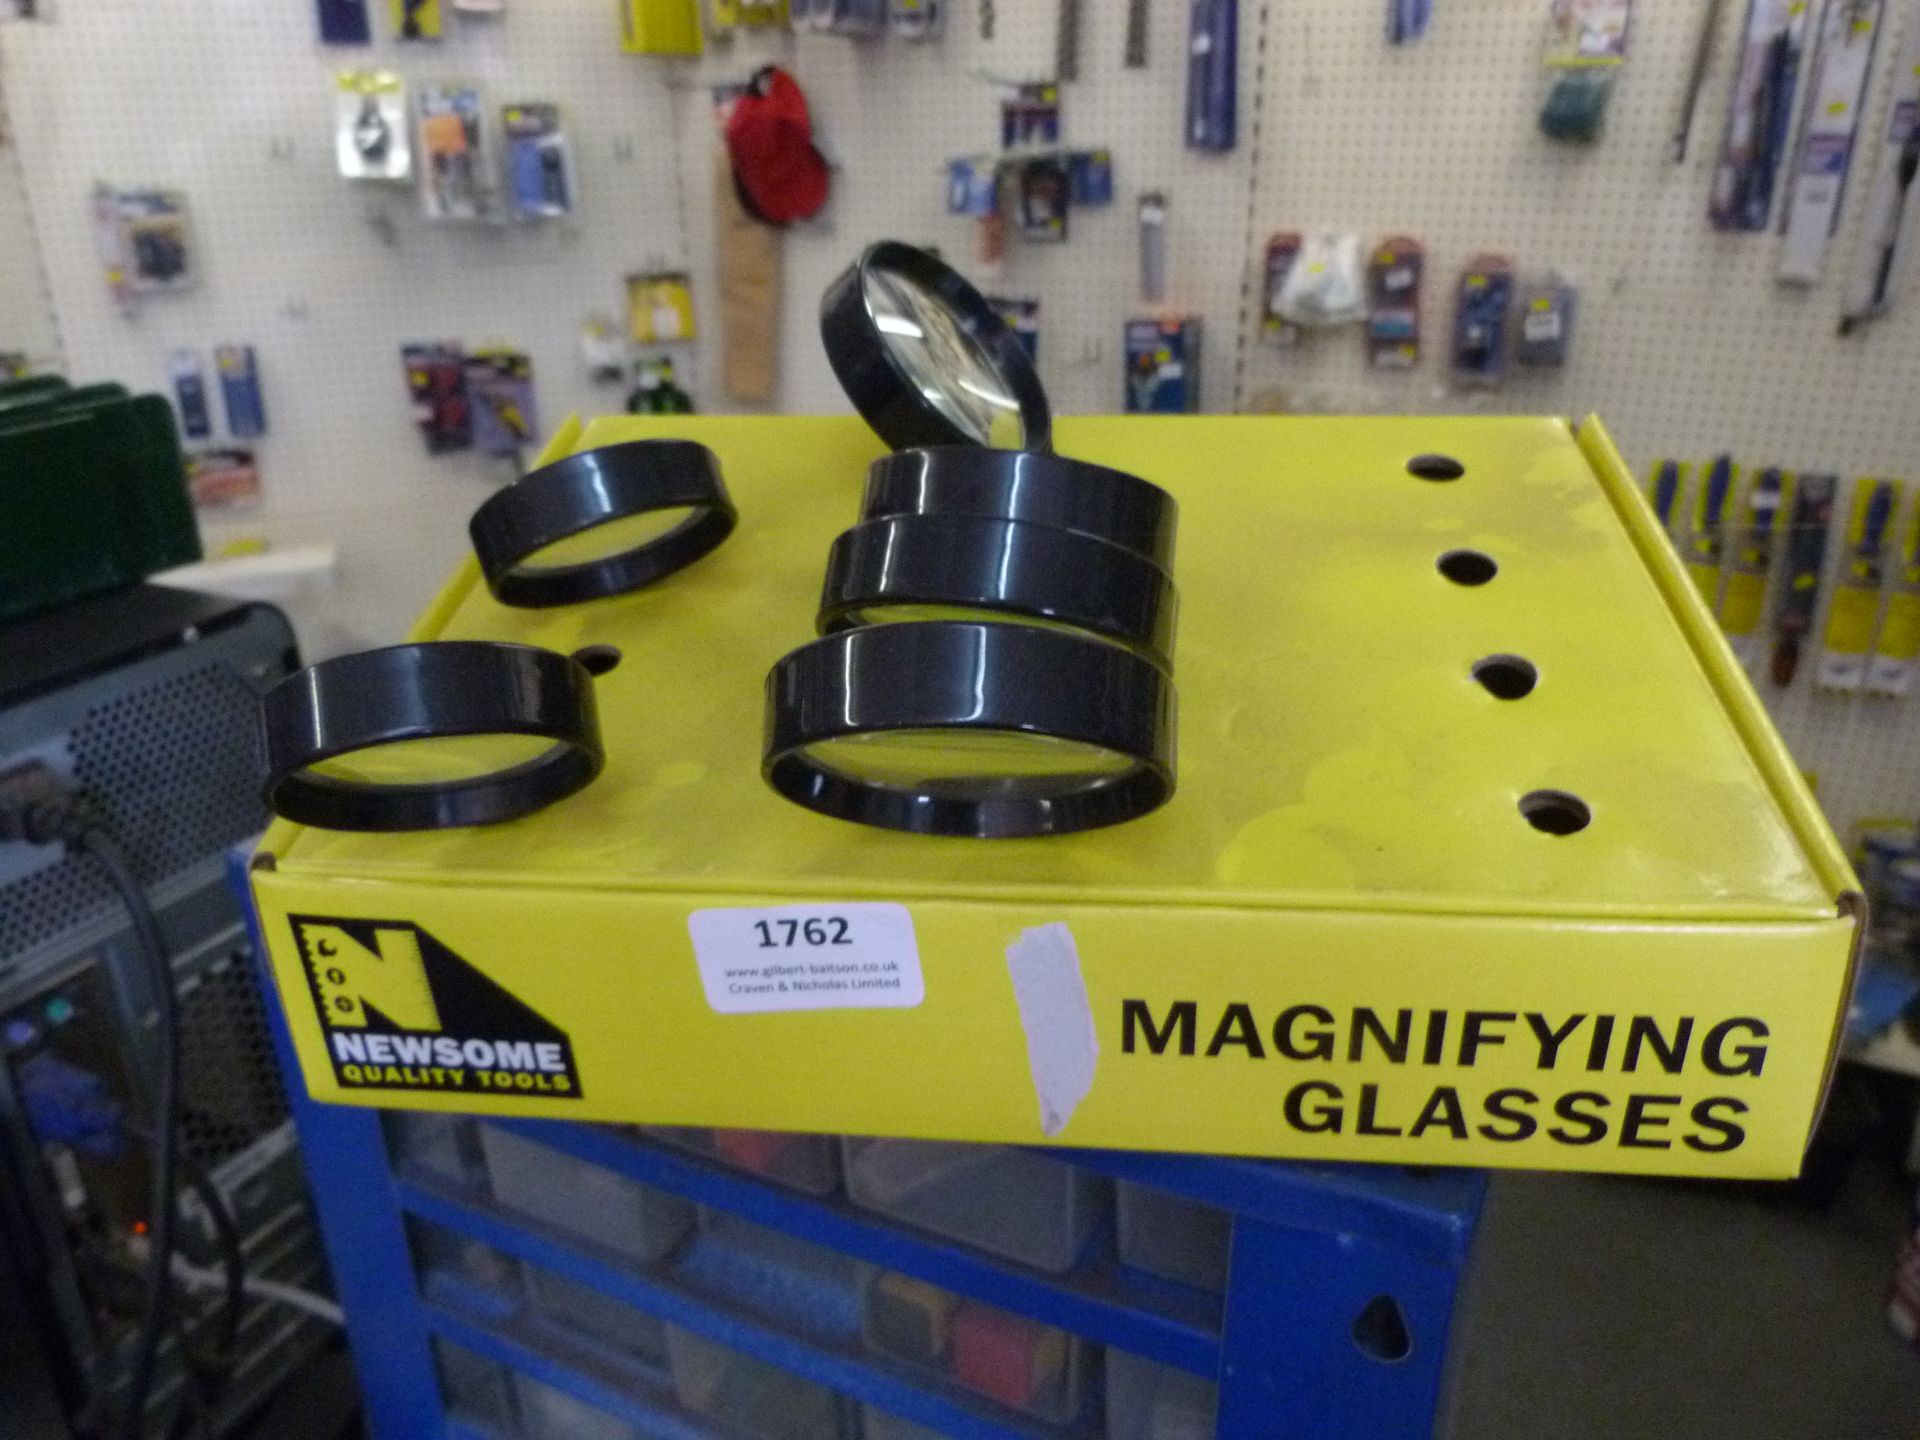 *Six Magnifying Glasses